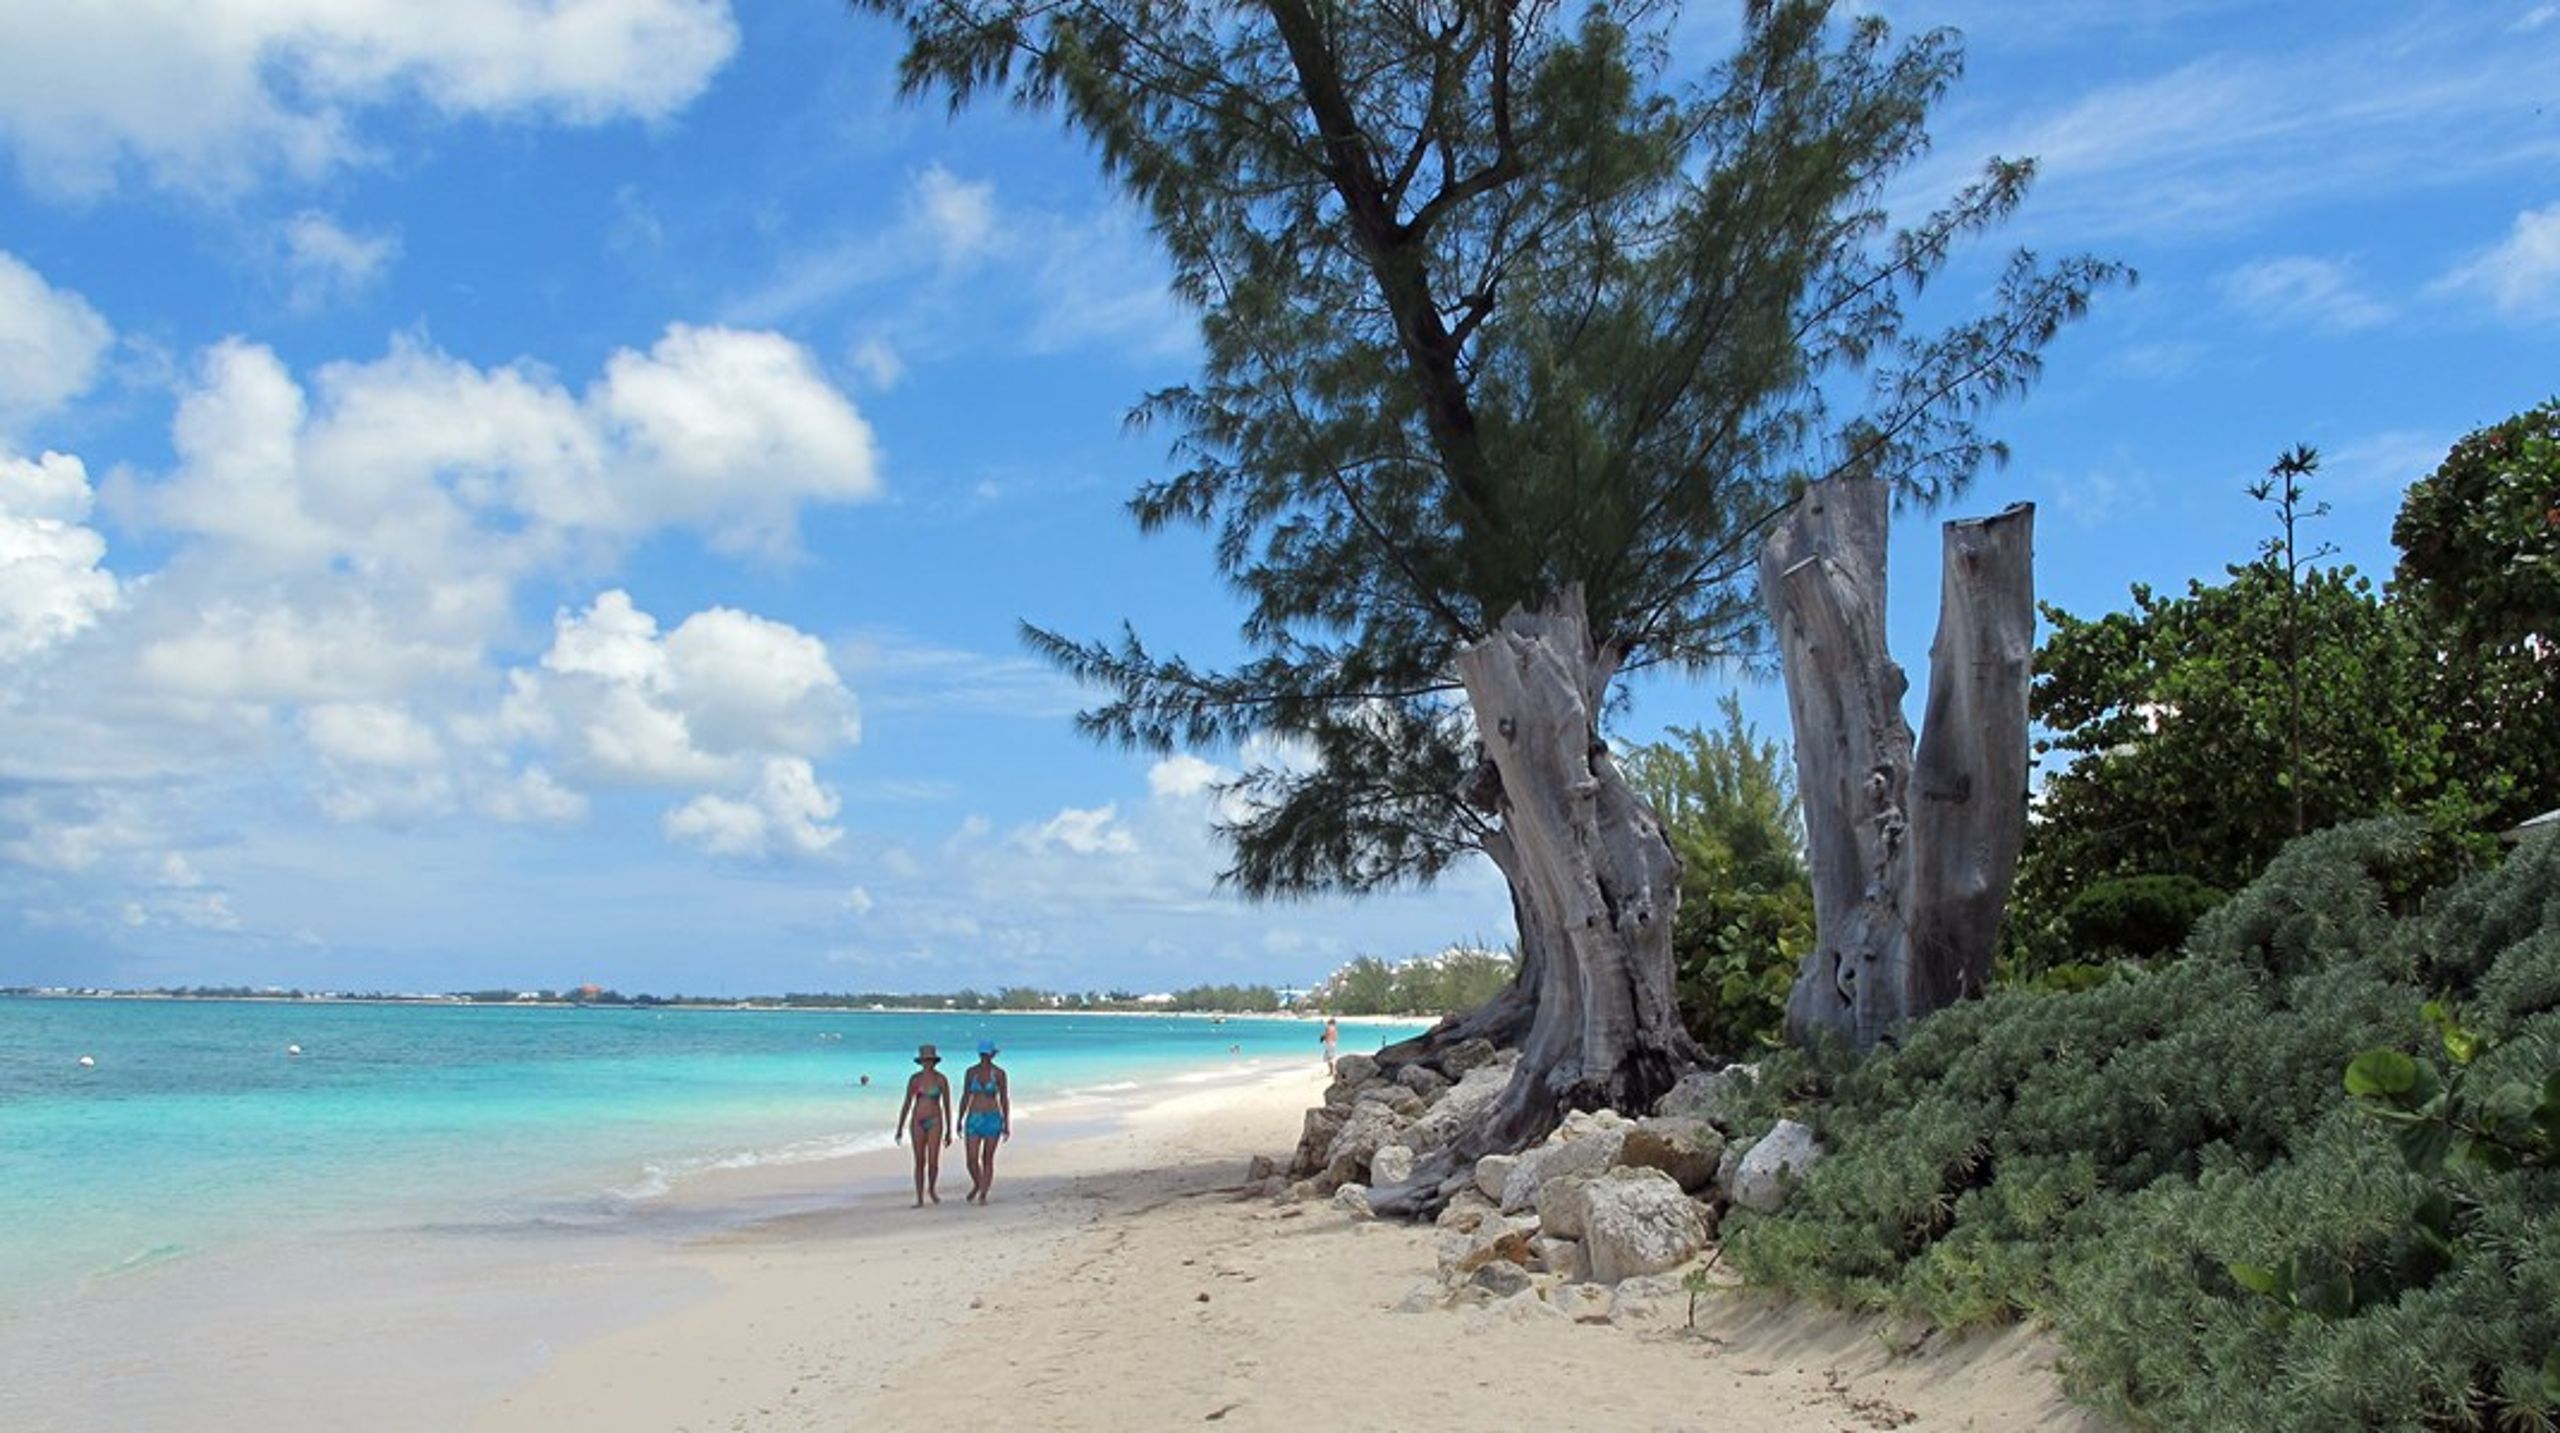 Caymanöarna är ett av världens främsta skatteparadis.